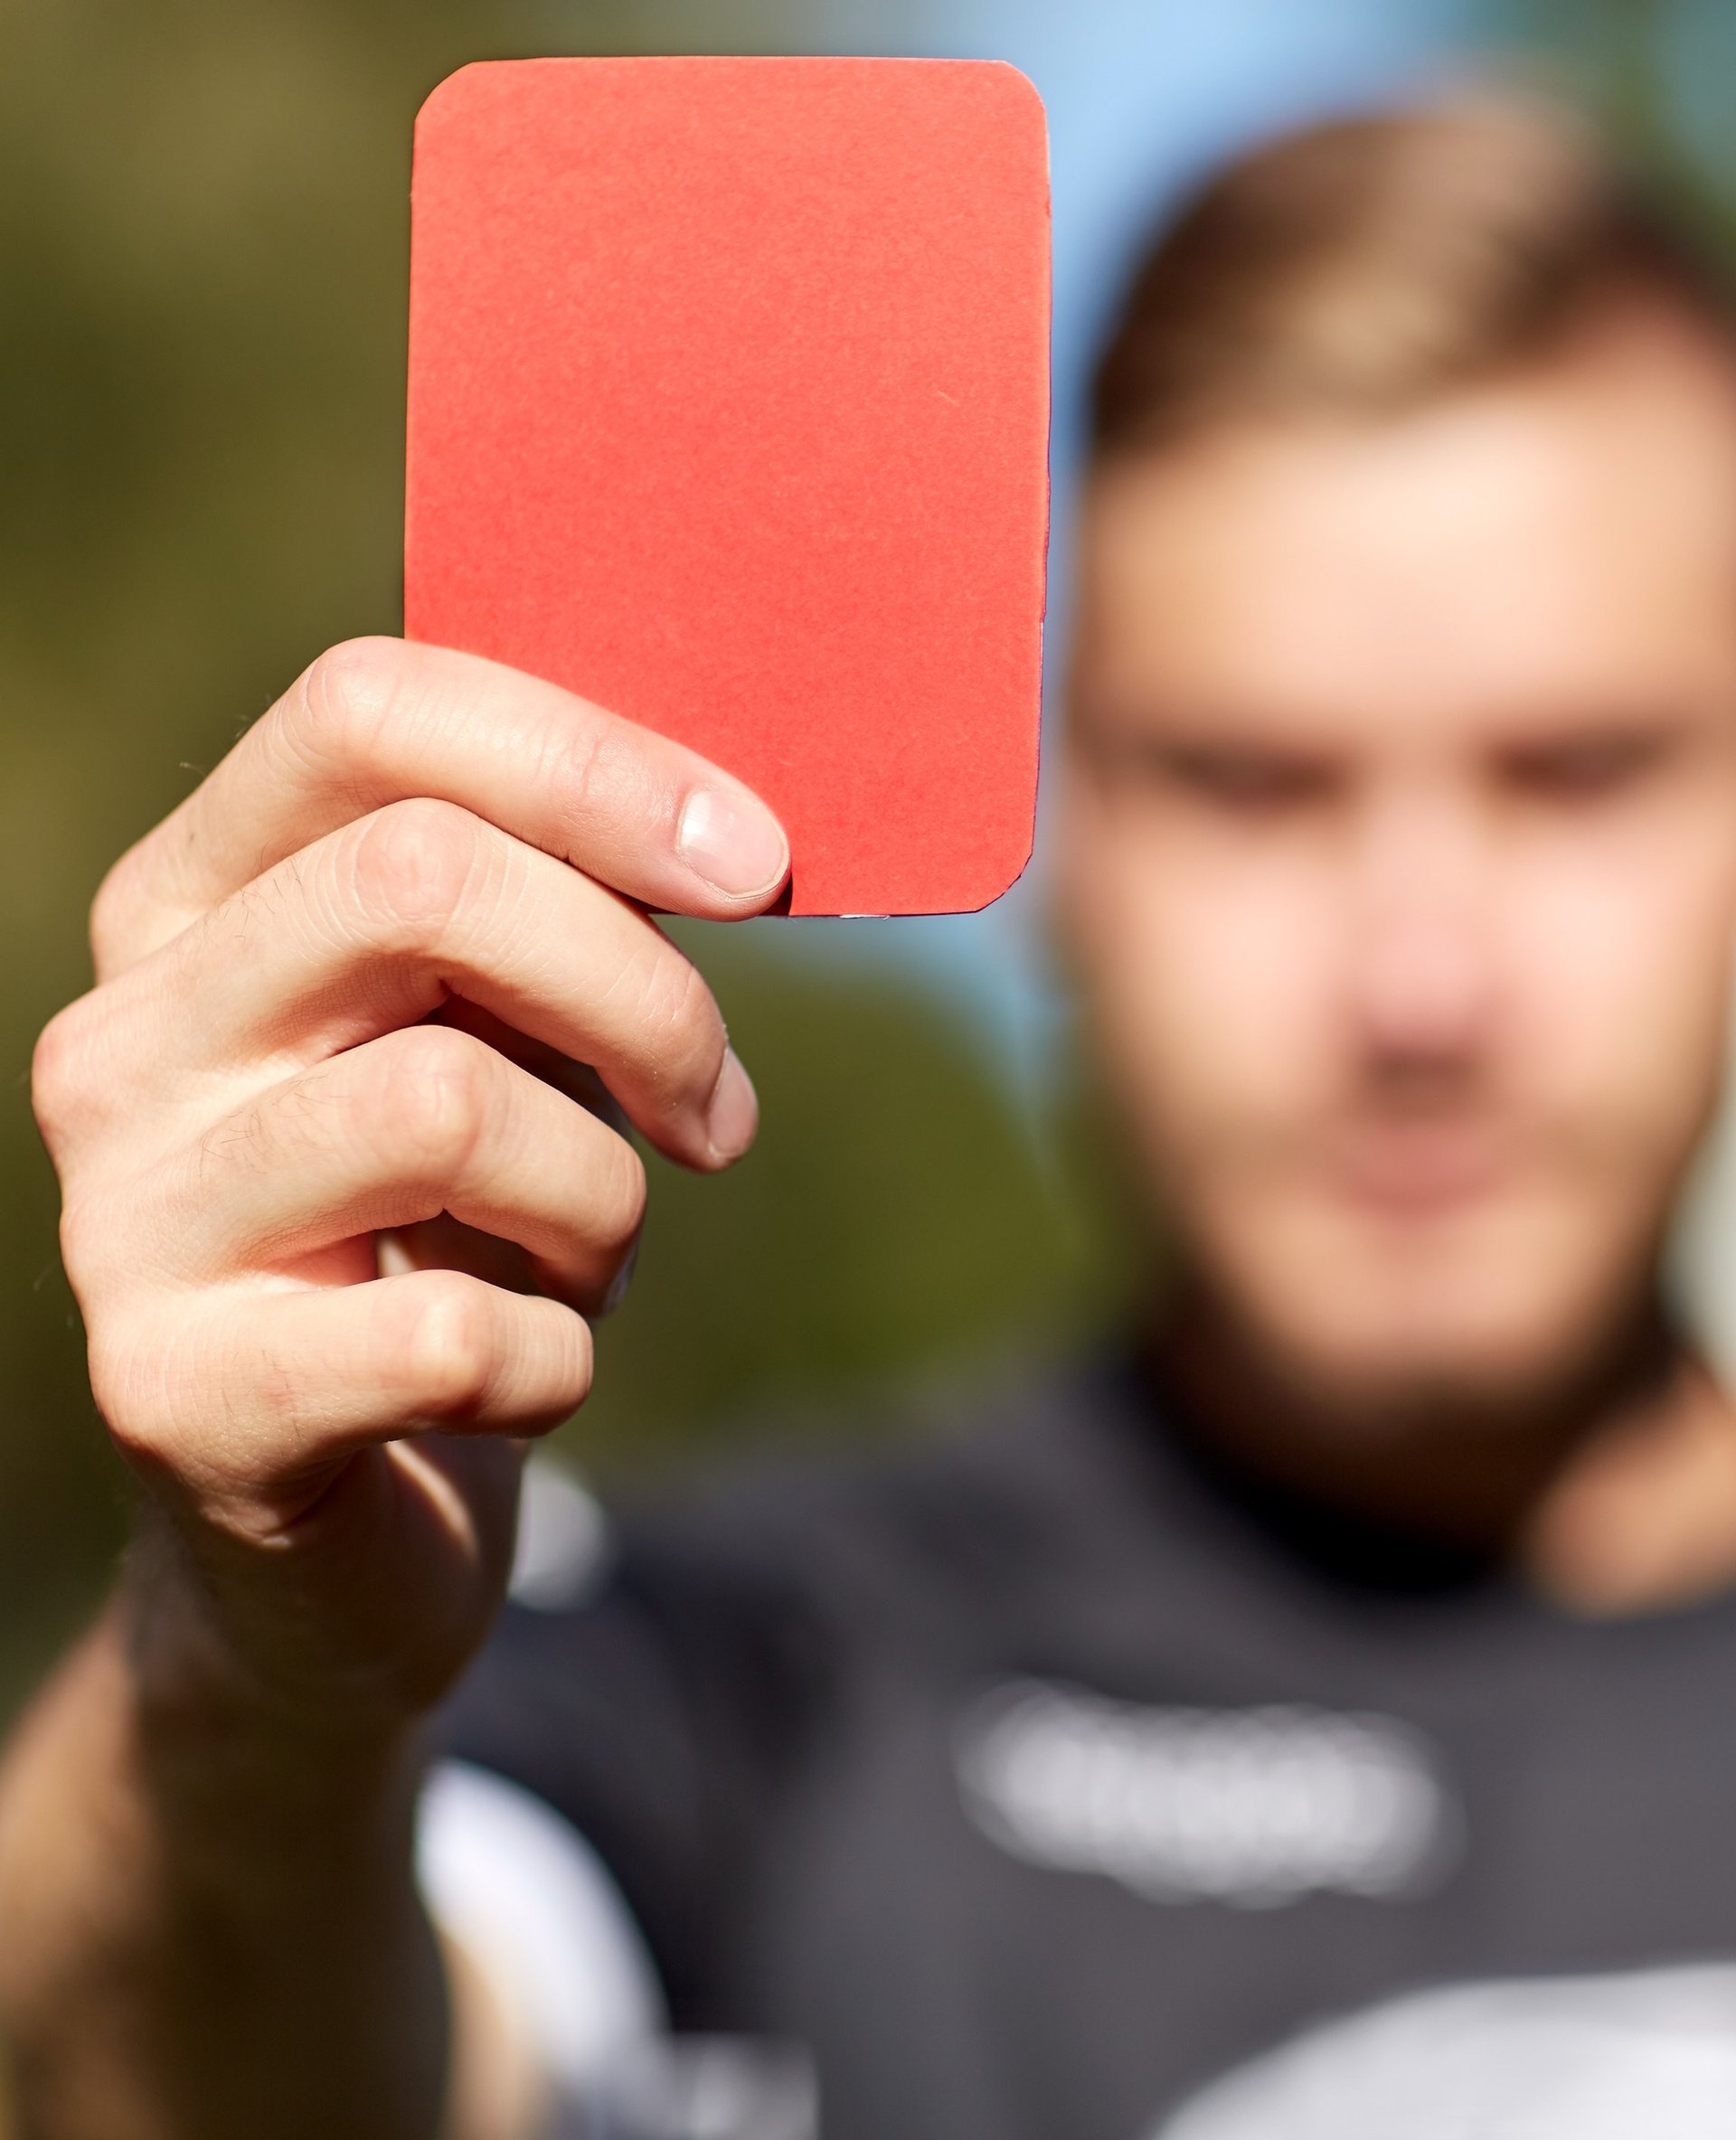 Schiedsrichter zeigt die rote Karte